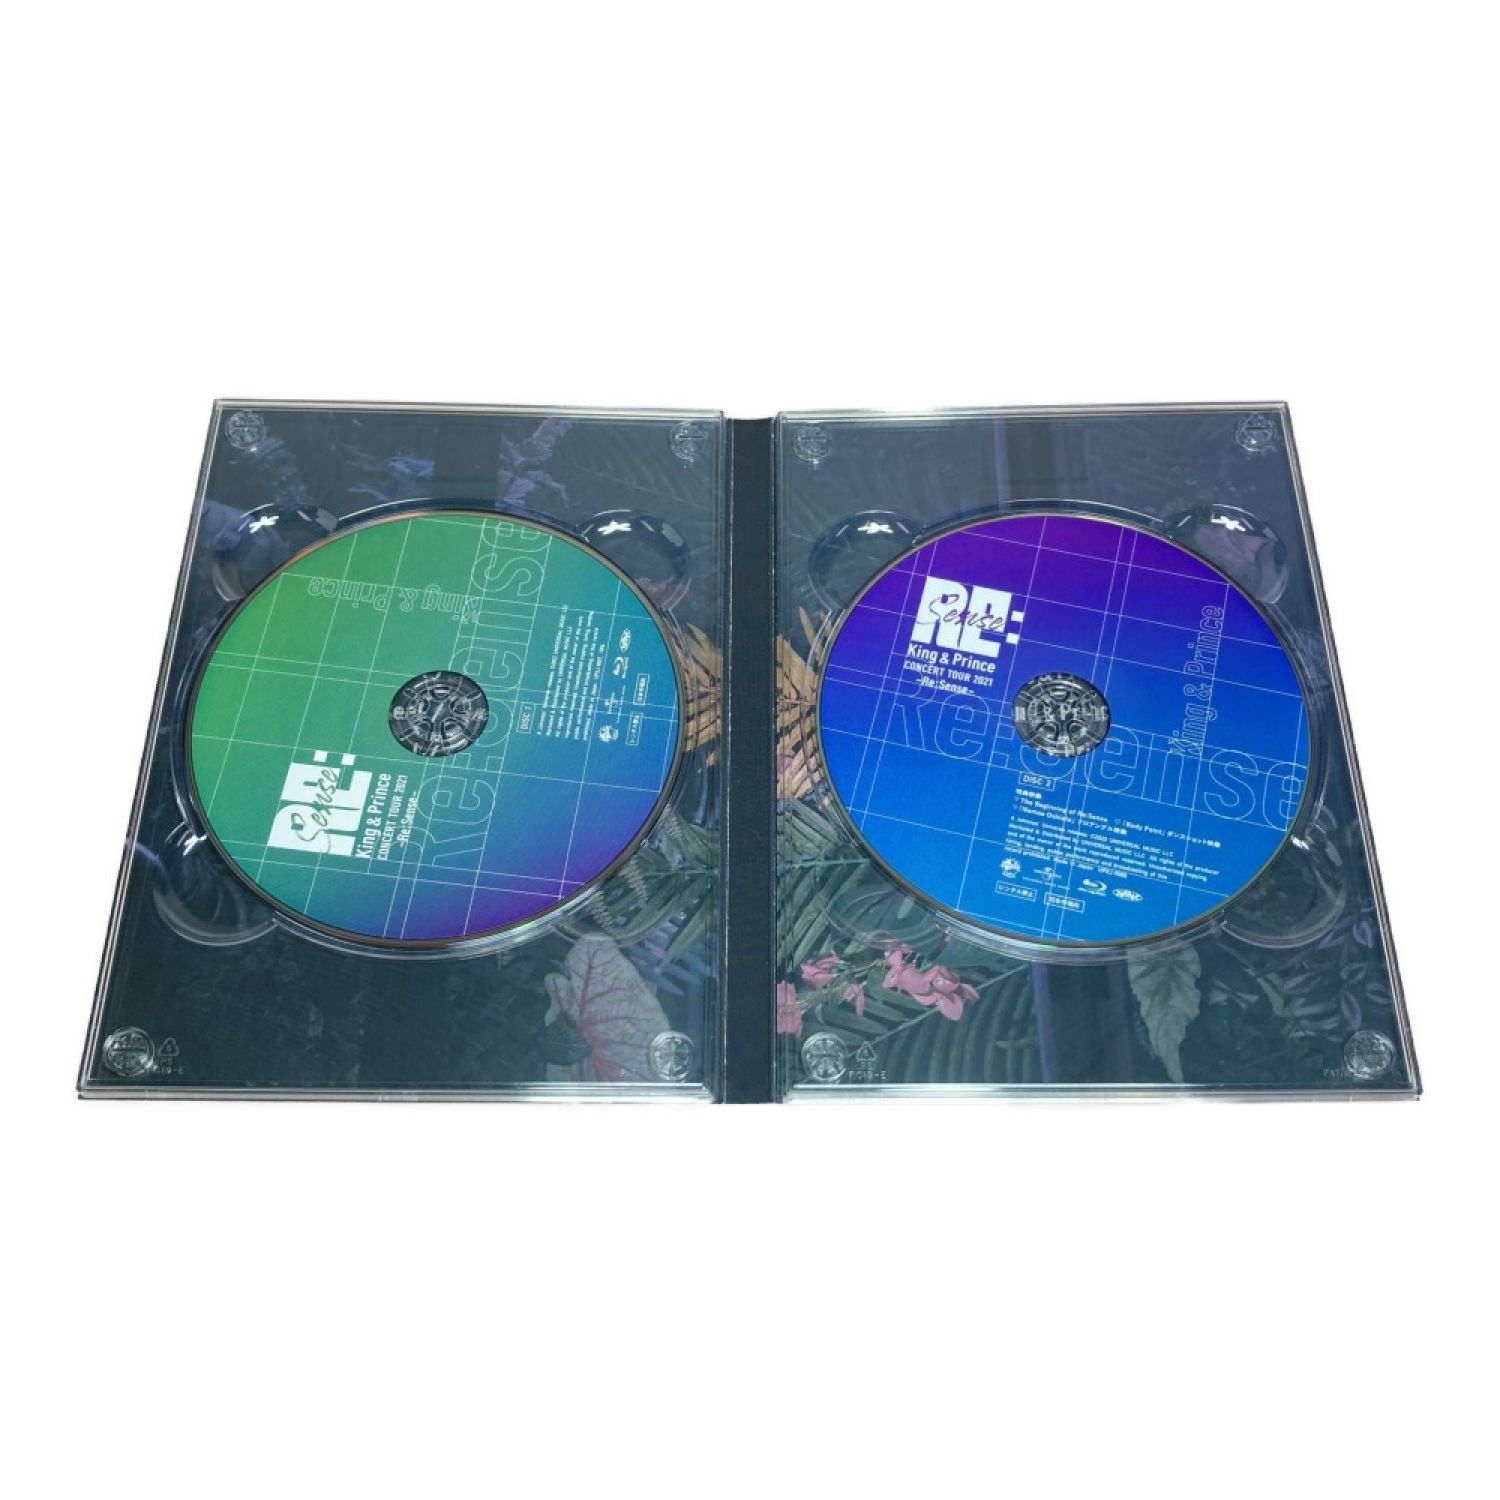 中古】 King&Prince キンプリ CONCERTTOUR 2021 Re:Sense Blu-ray/2枚